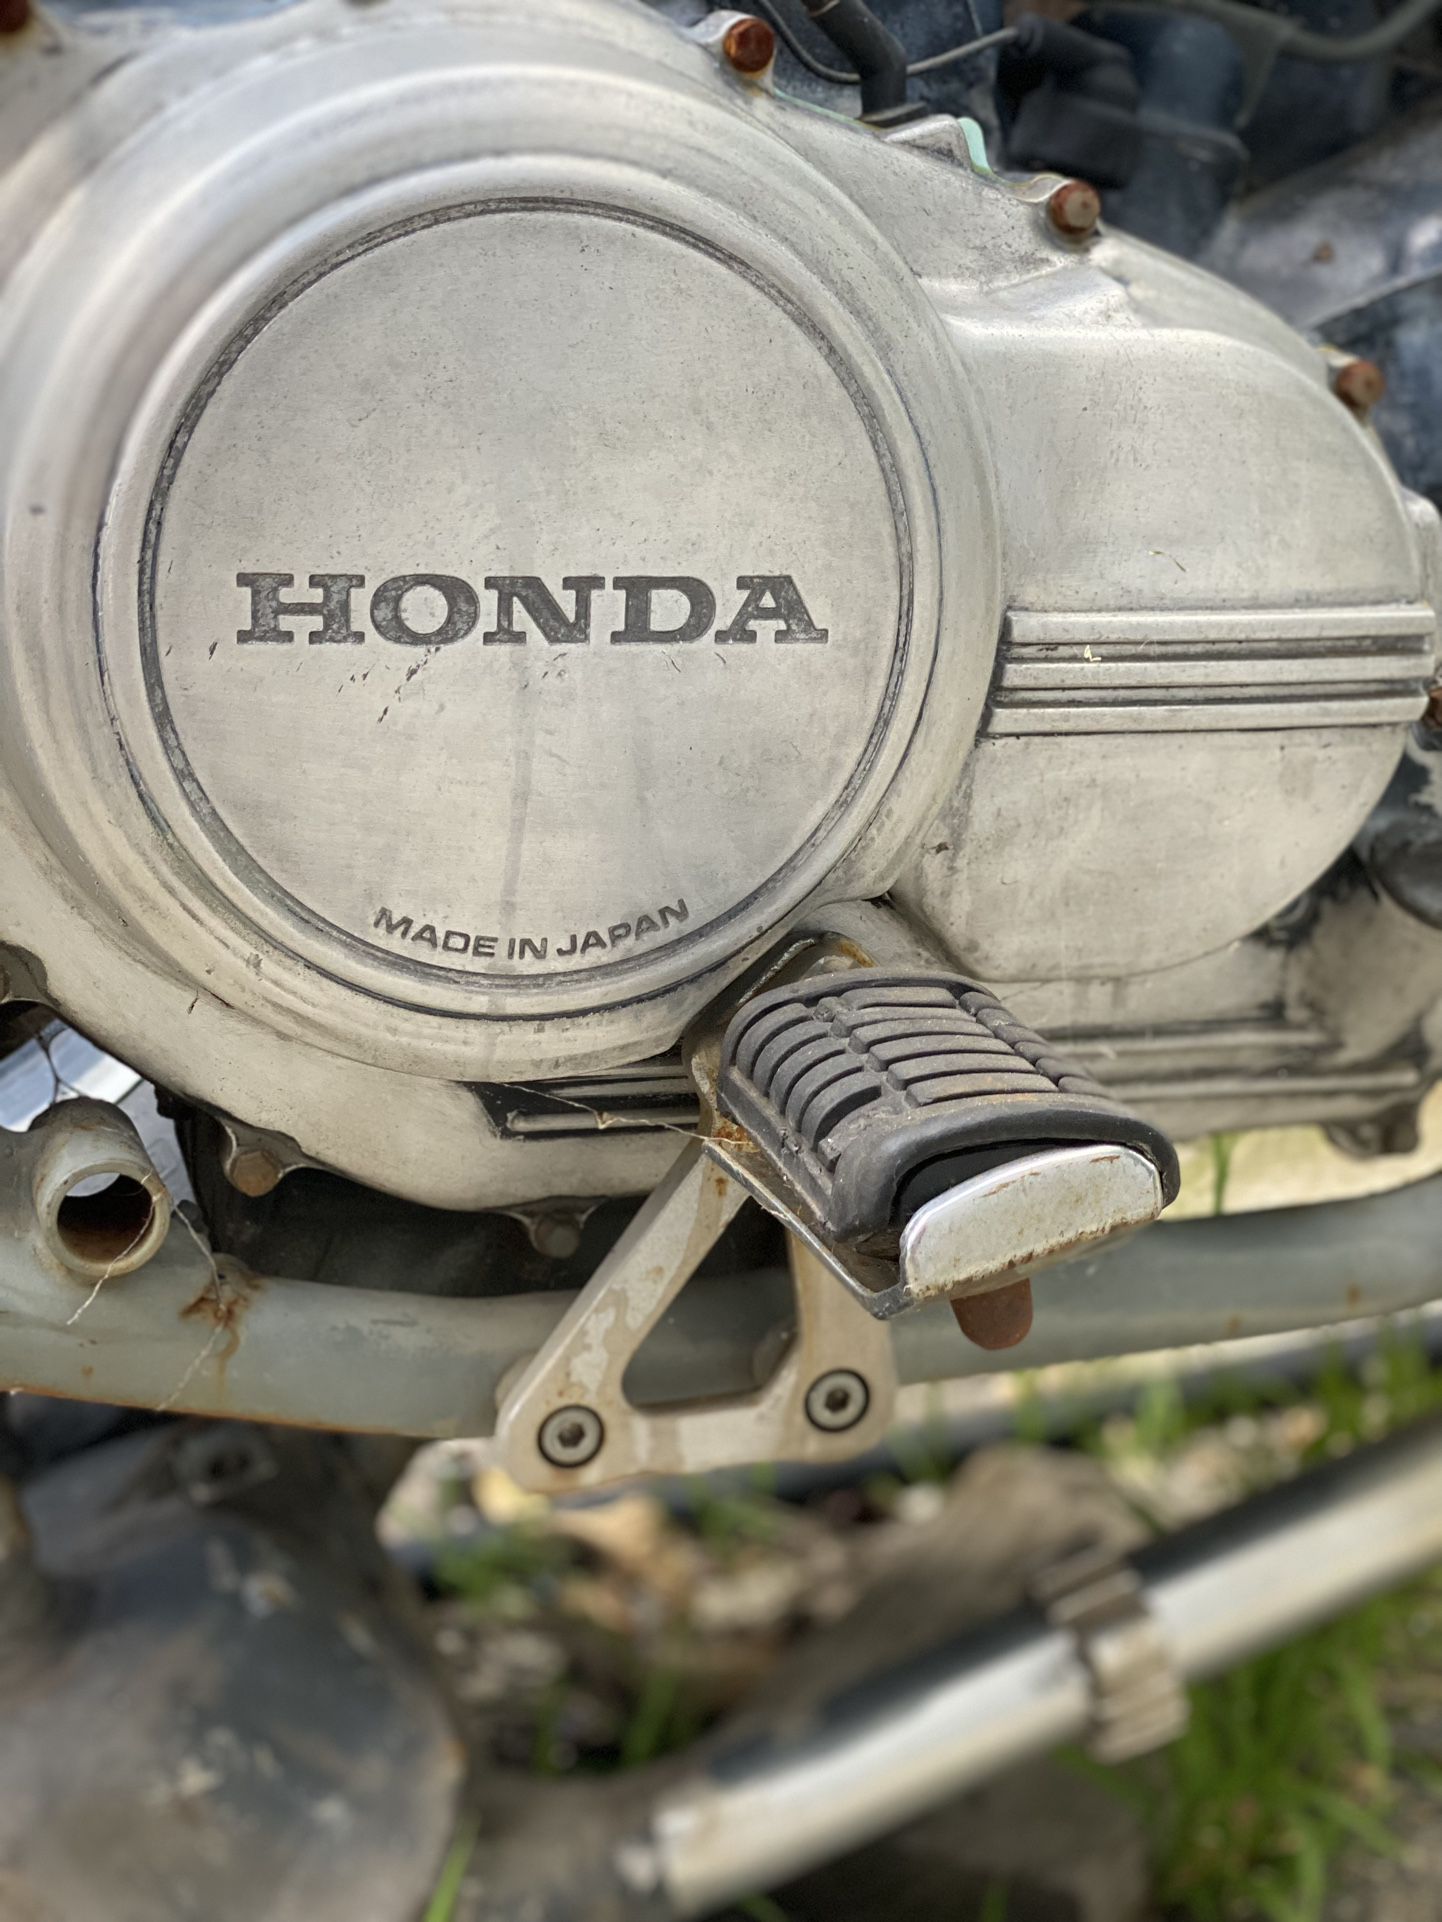 Honda motorcycle (made In Japan )  